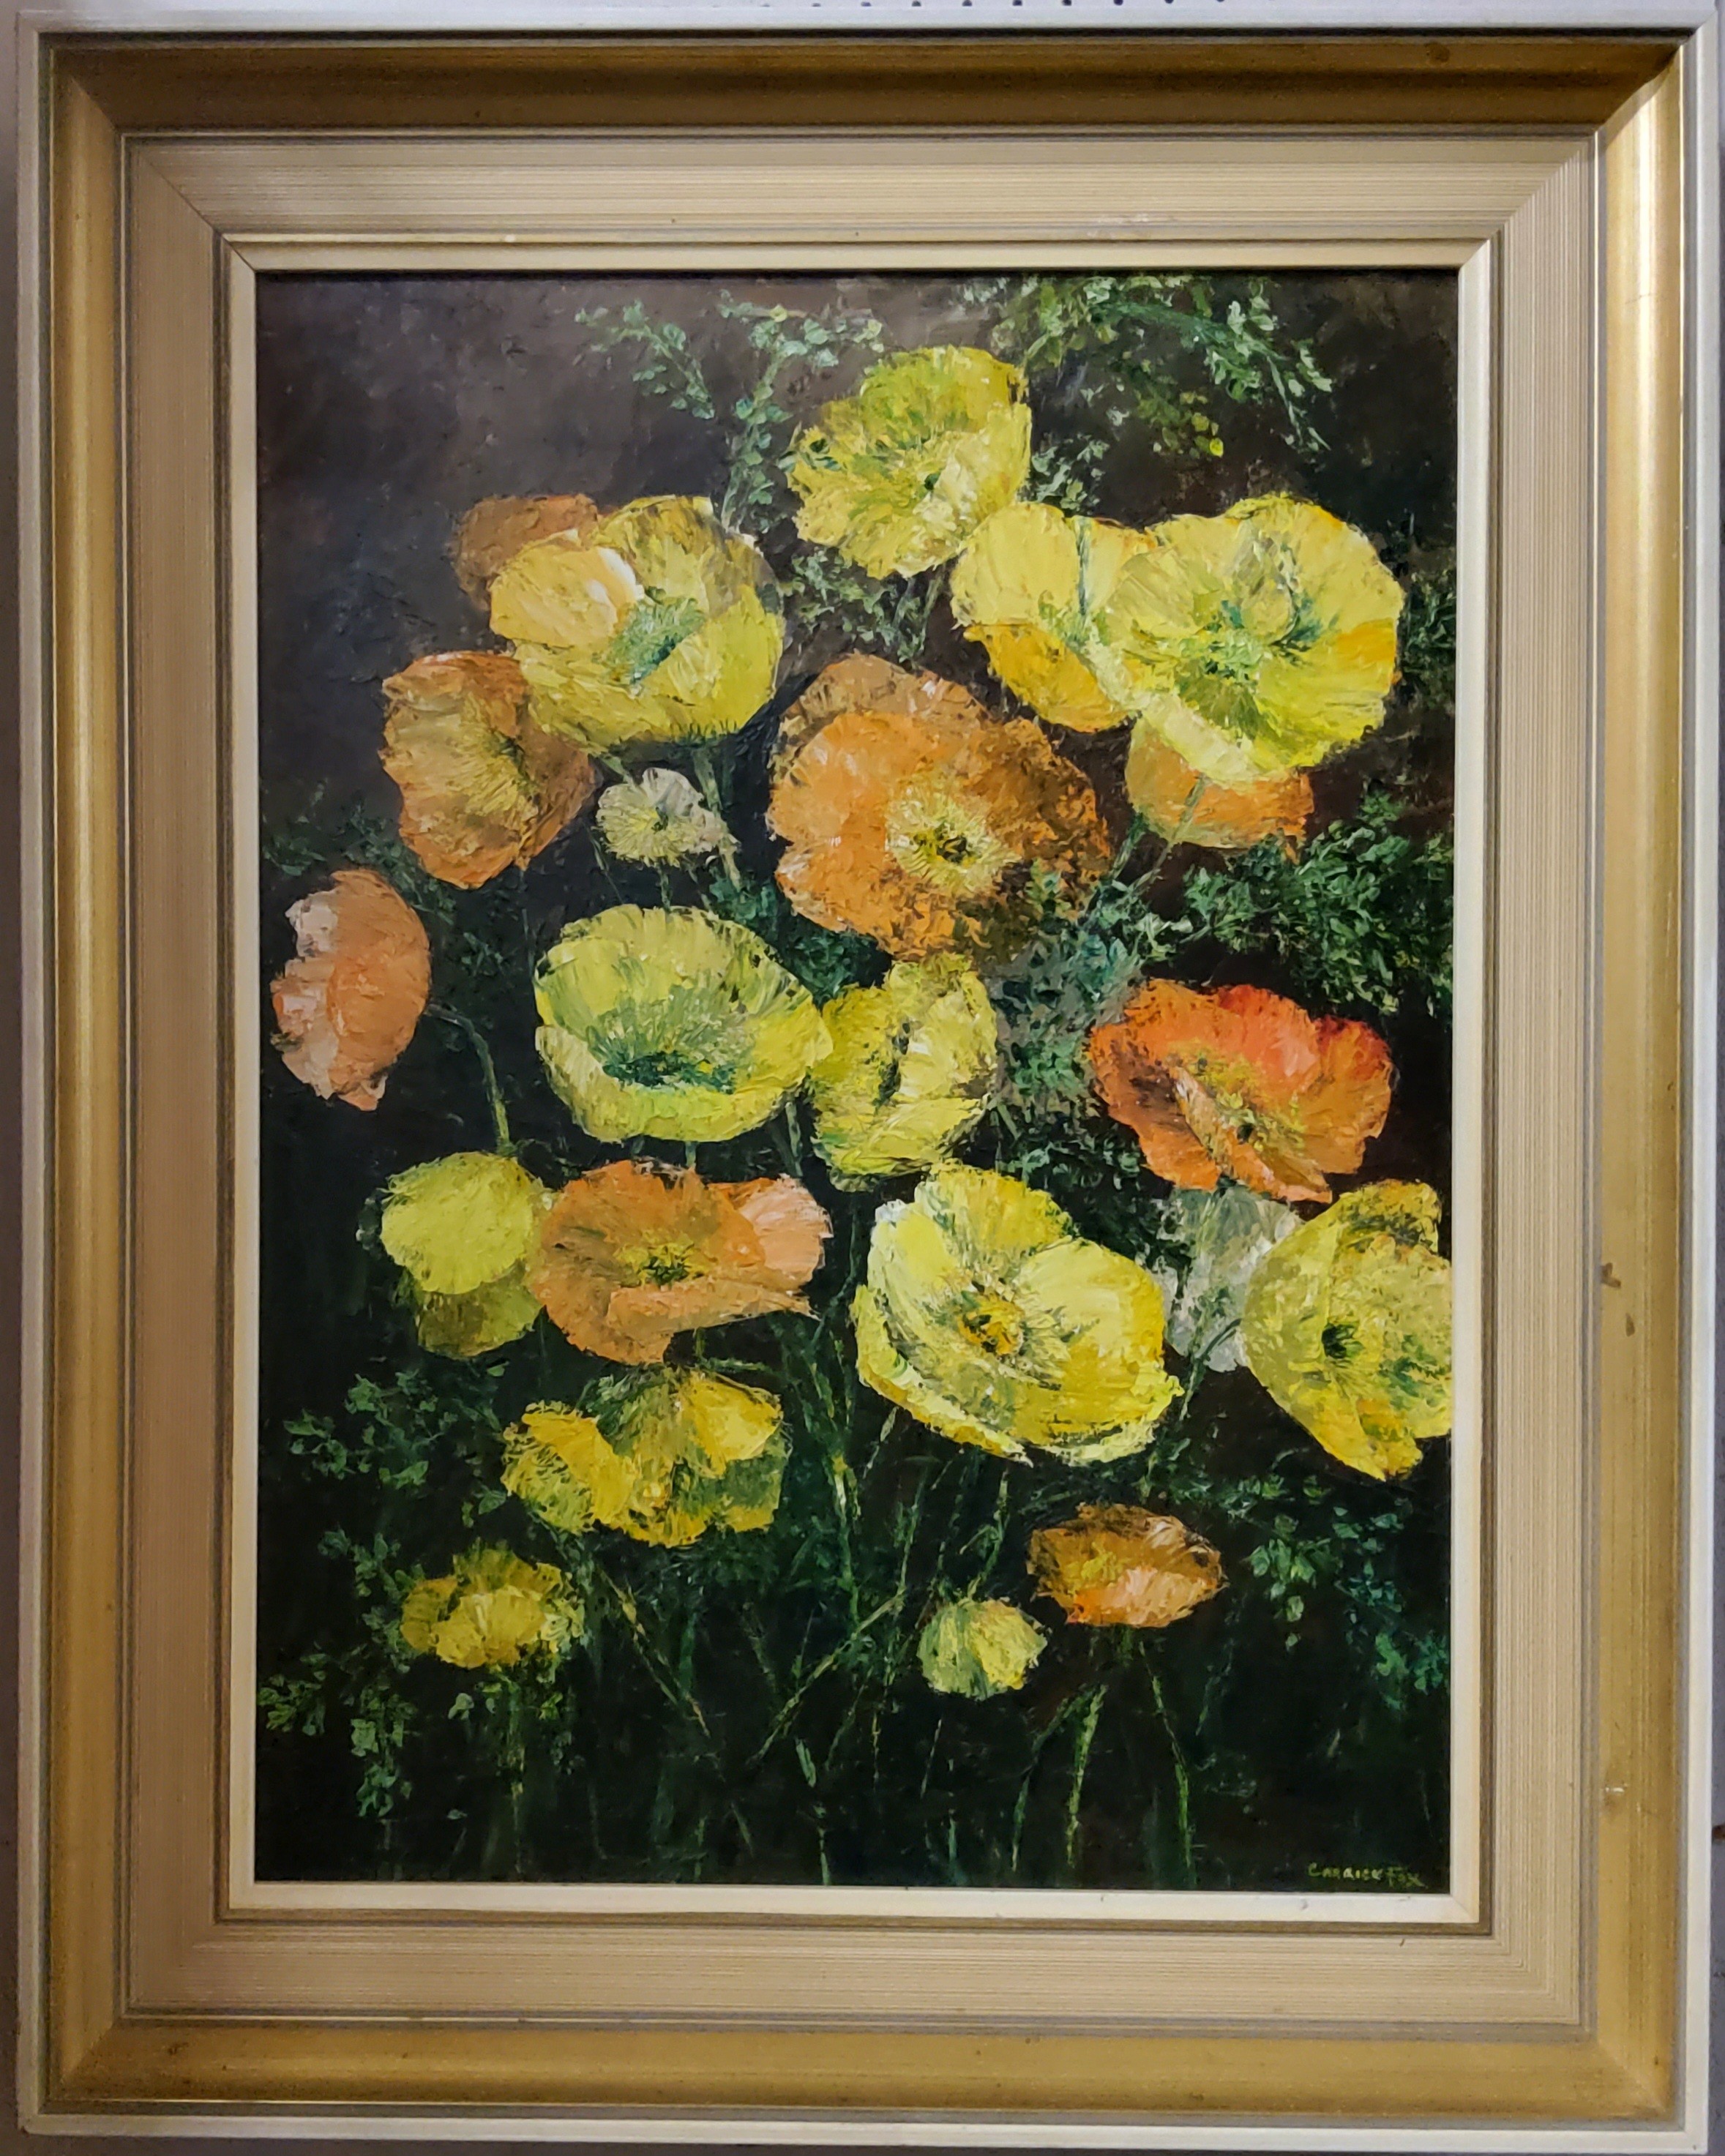 Ethel Carrick Fox (AUSTRALIAN 1872-1952) Flower Still Life Observation  oil on board, framed, 60cm x